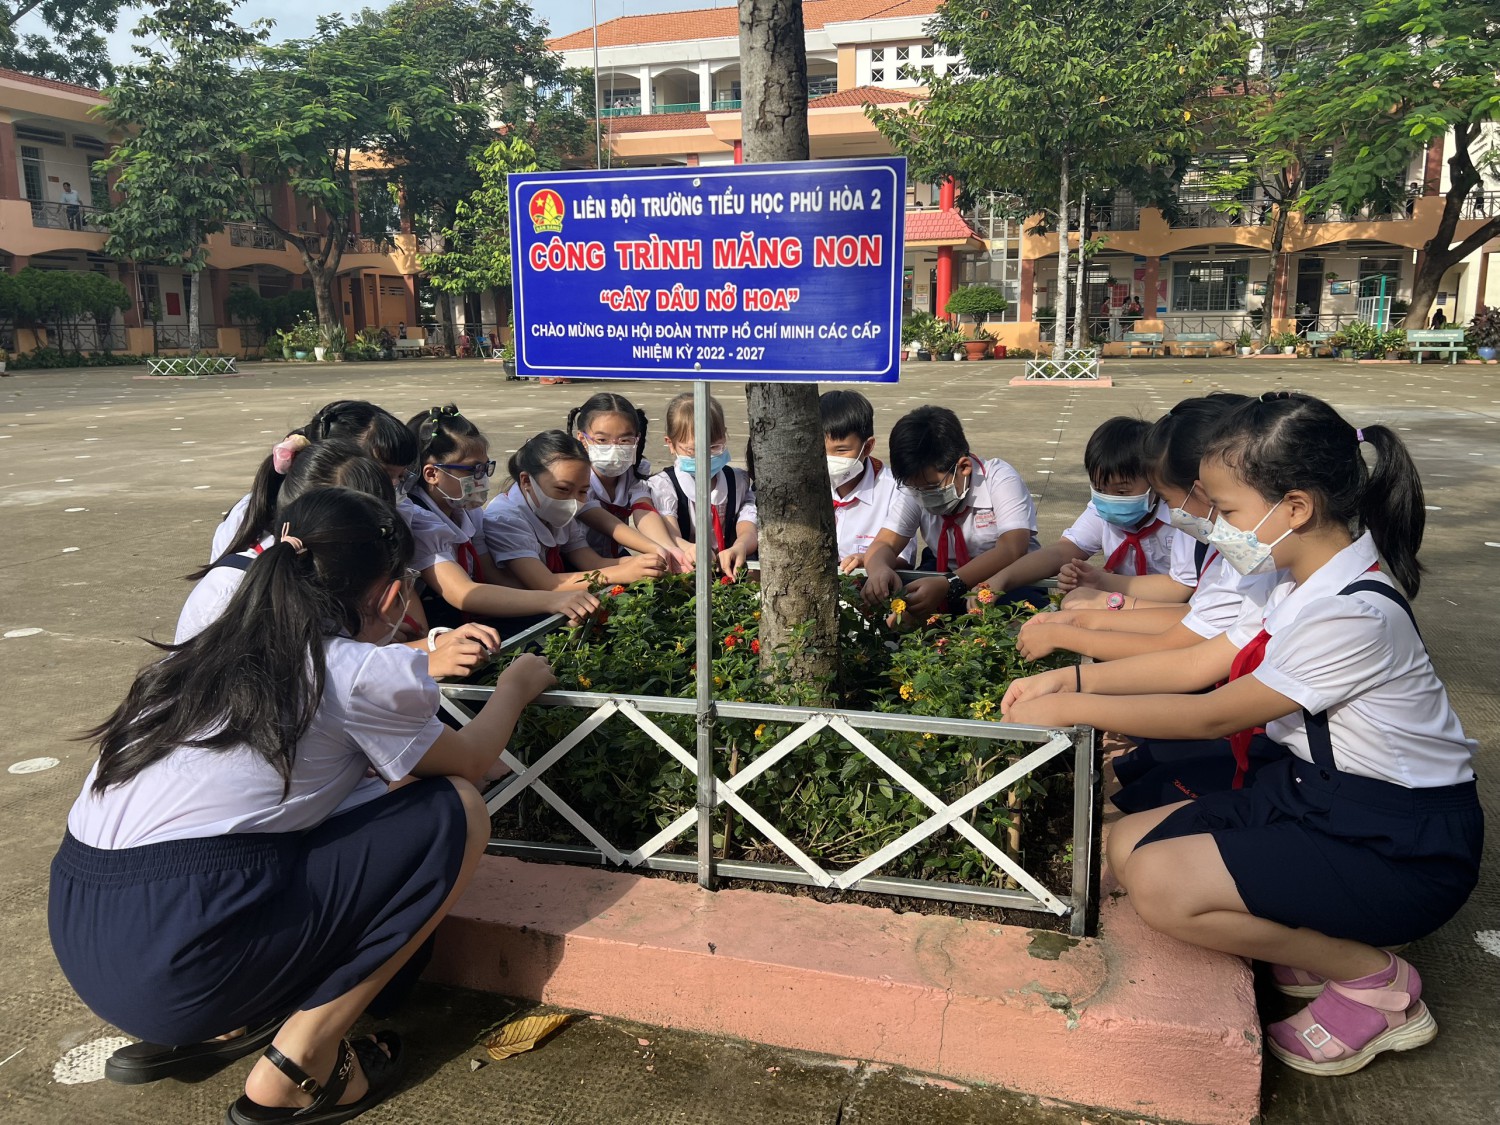 Công trình măng non "Cây dầu nở hoa" của trường Tiểu học Phú Hòa 2